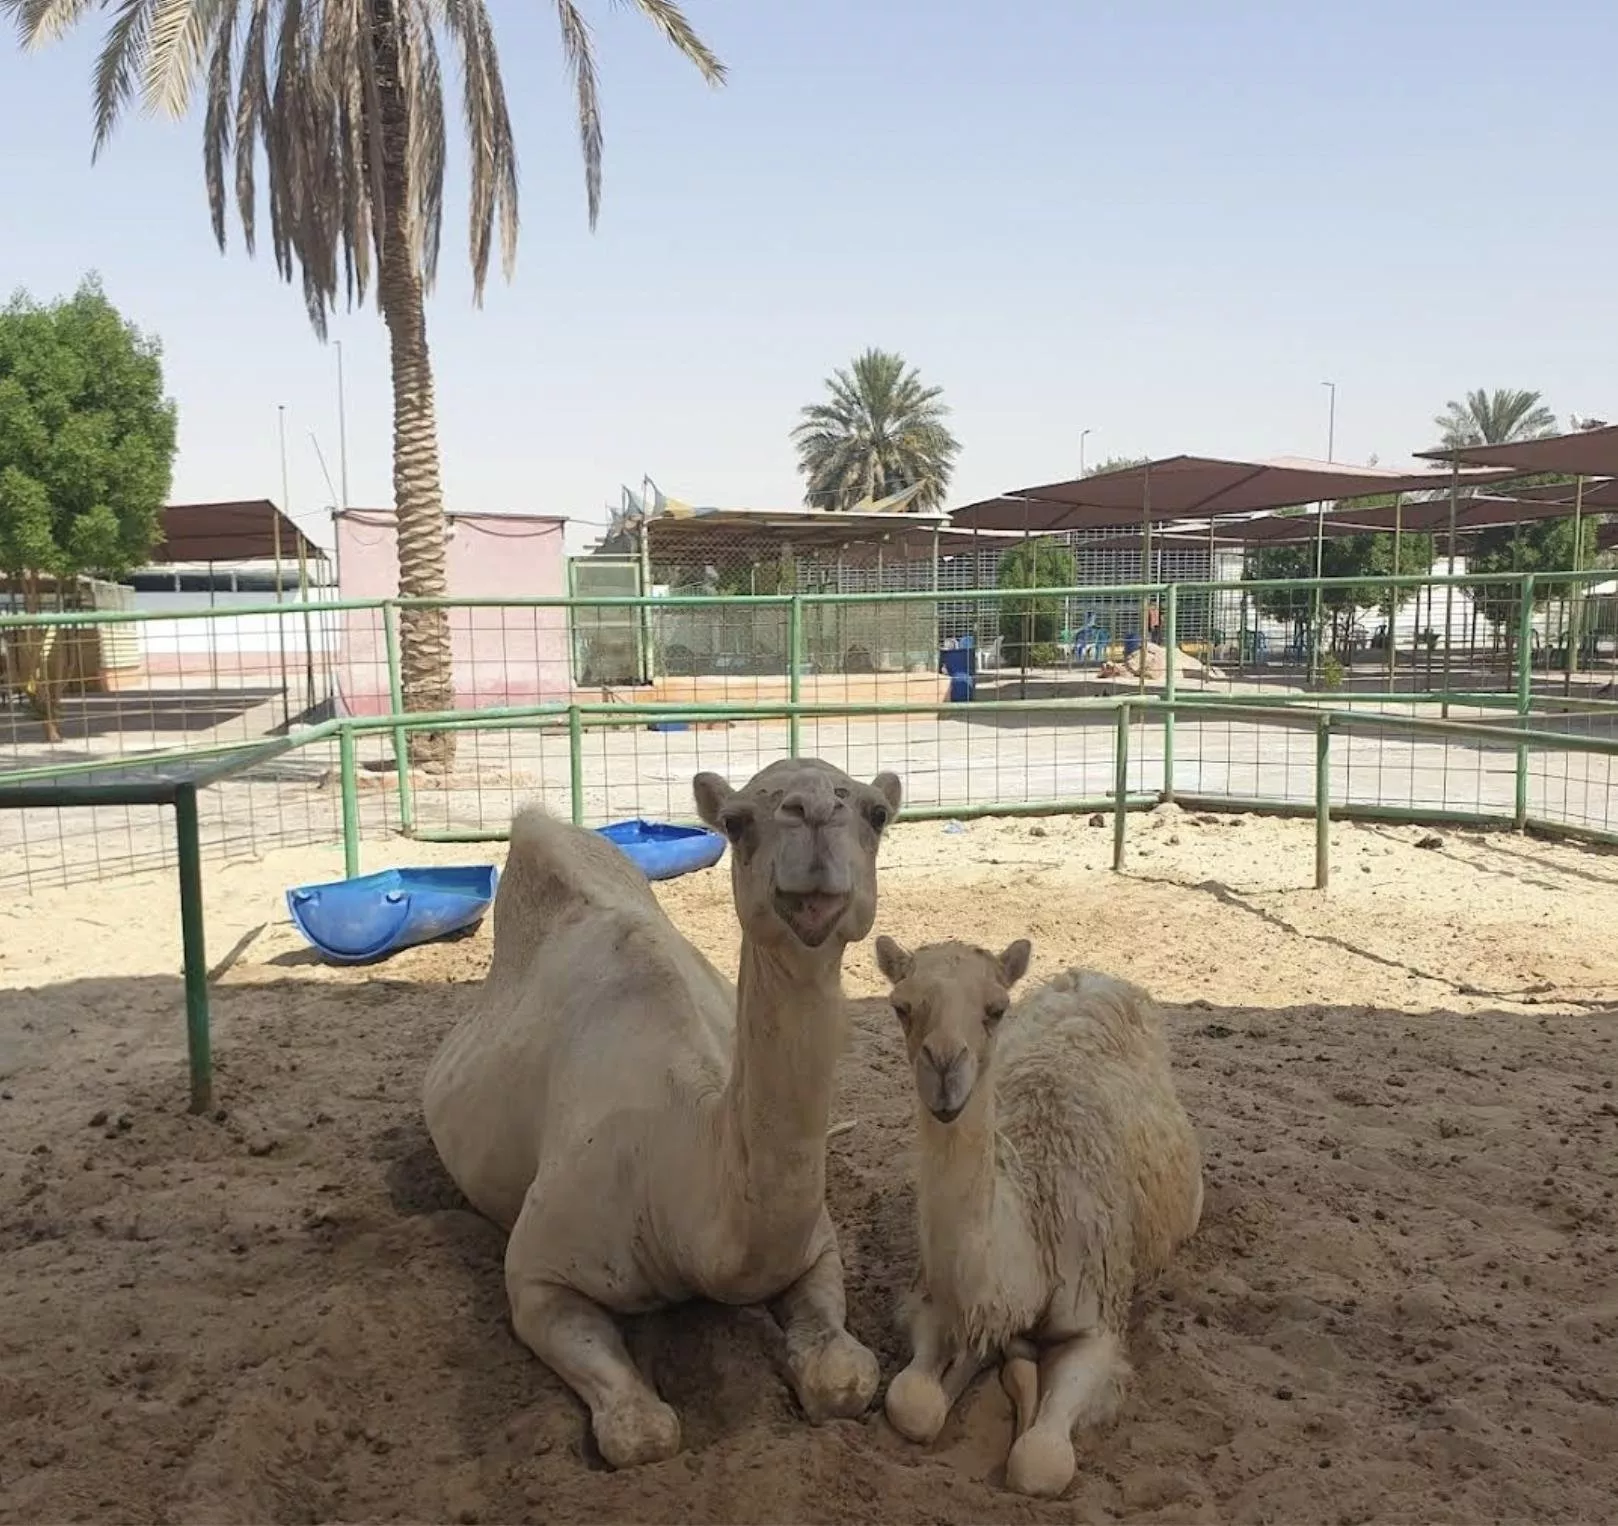 افضل 8 حدائق للحيوانات في السعودية مناسبة لقضاء الوقت في أحضان الطبيعة